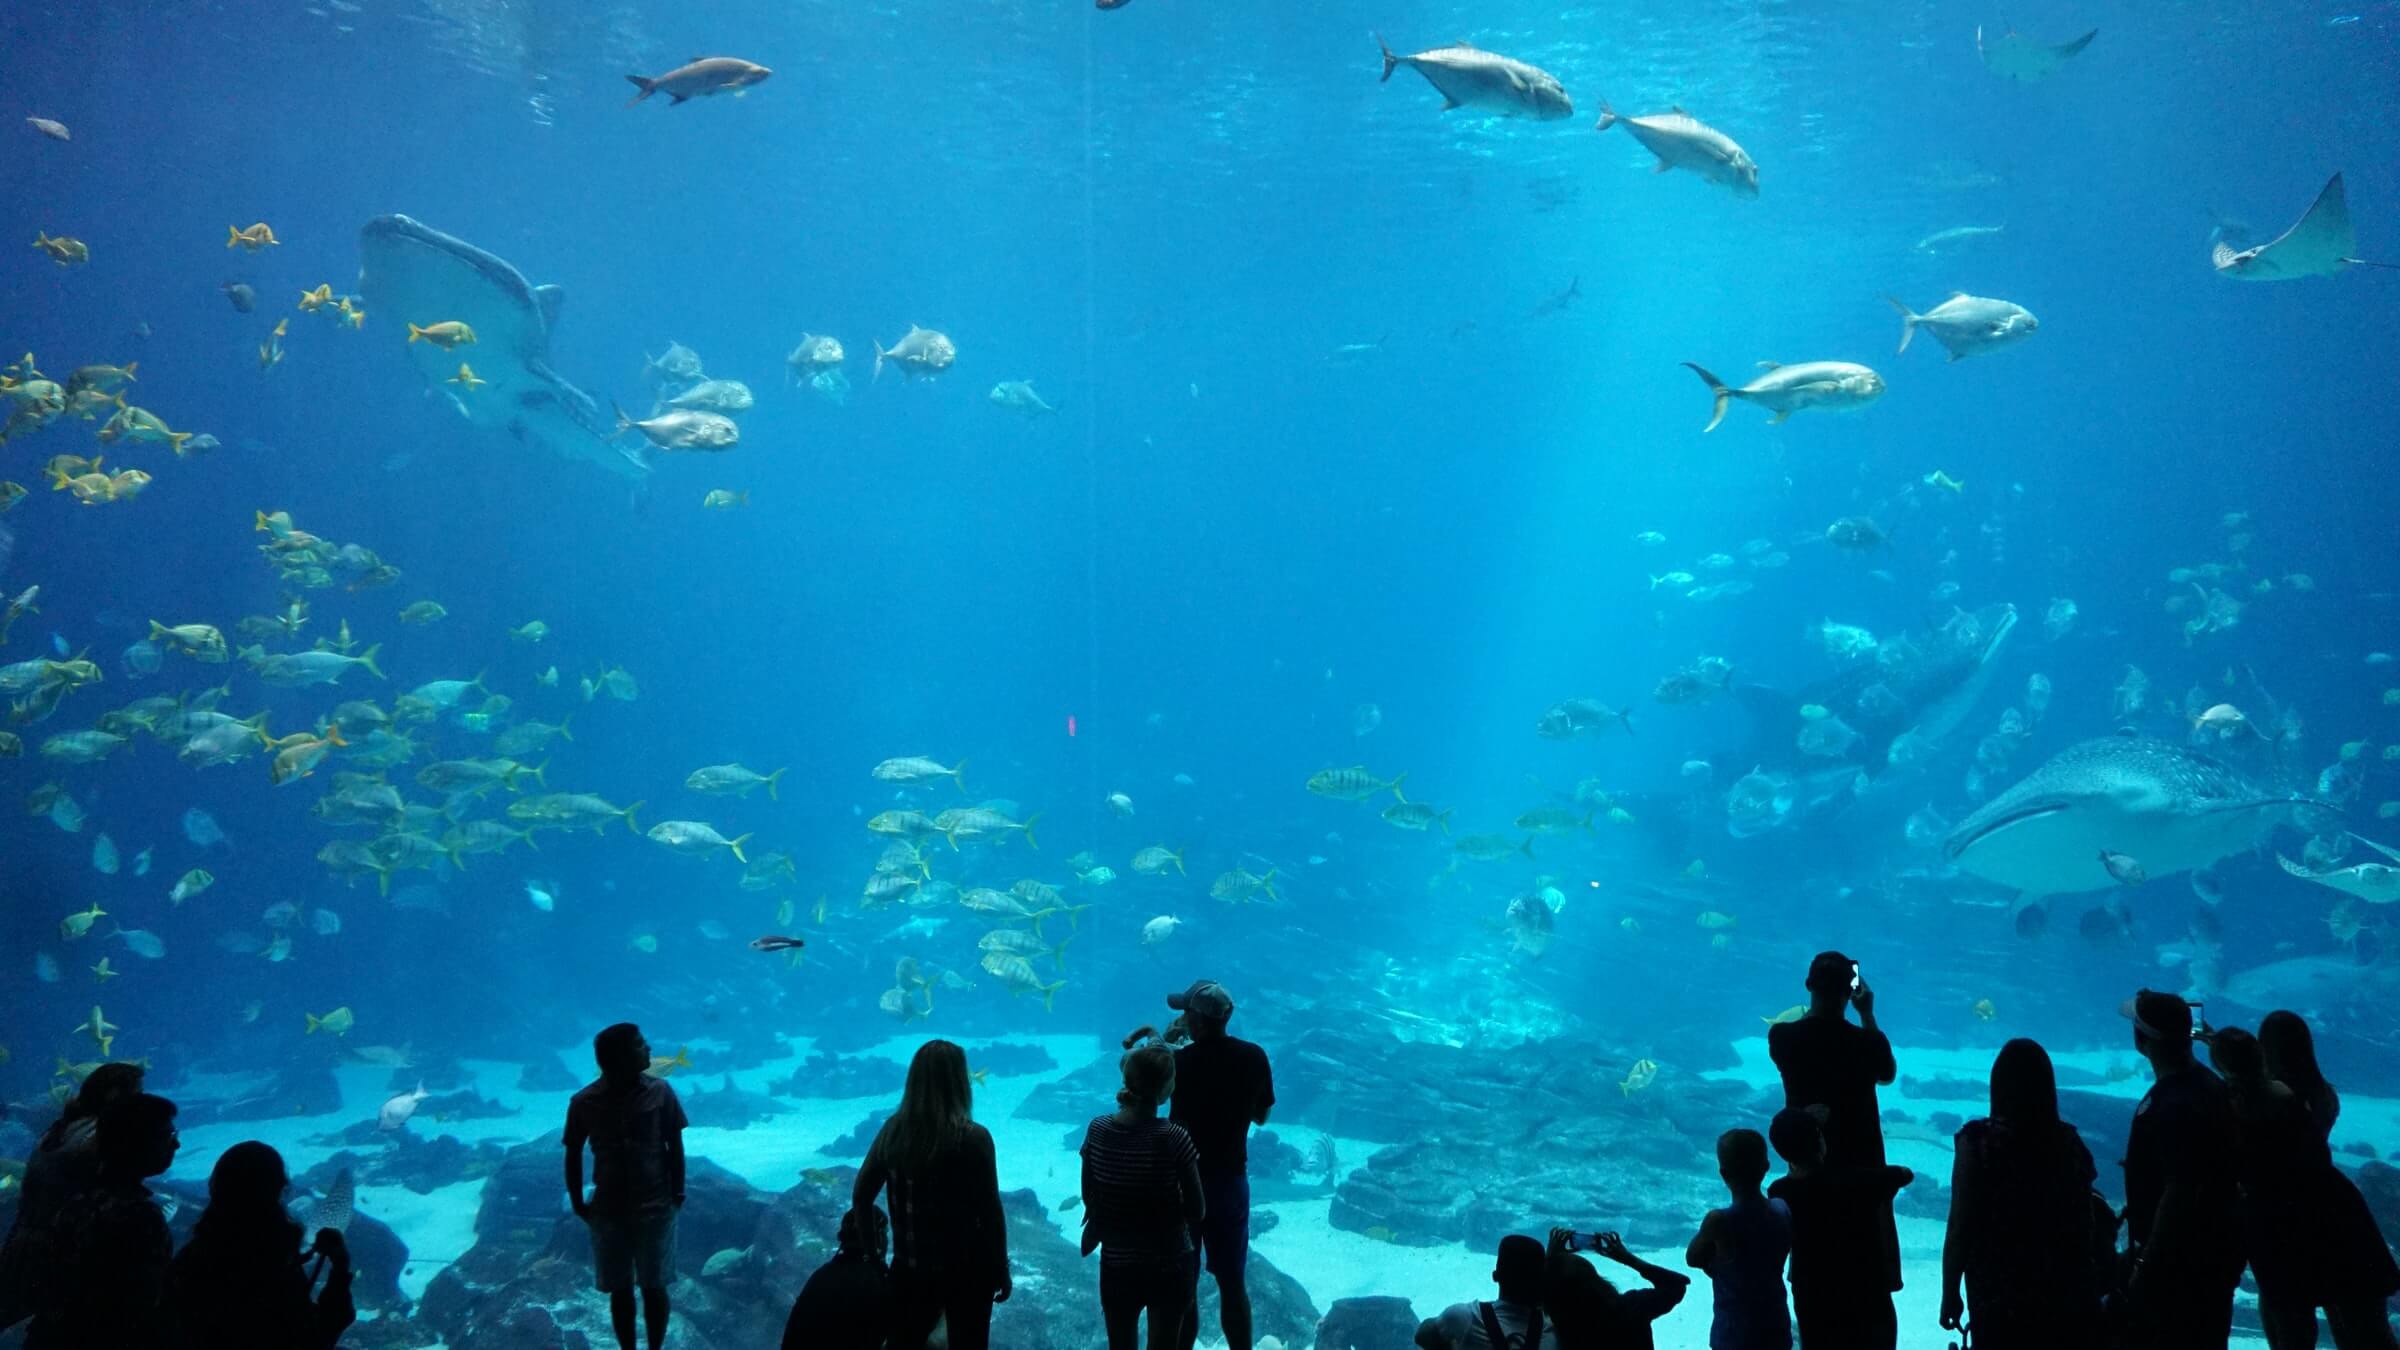 Aquarium Image from Mobile Attic Website